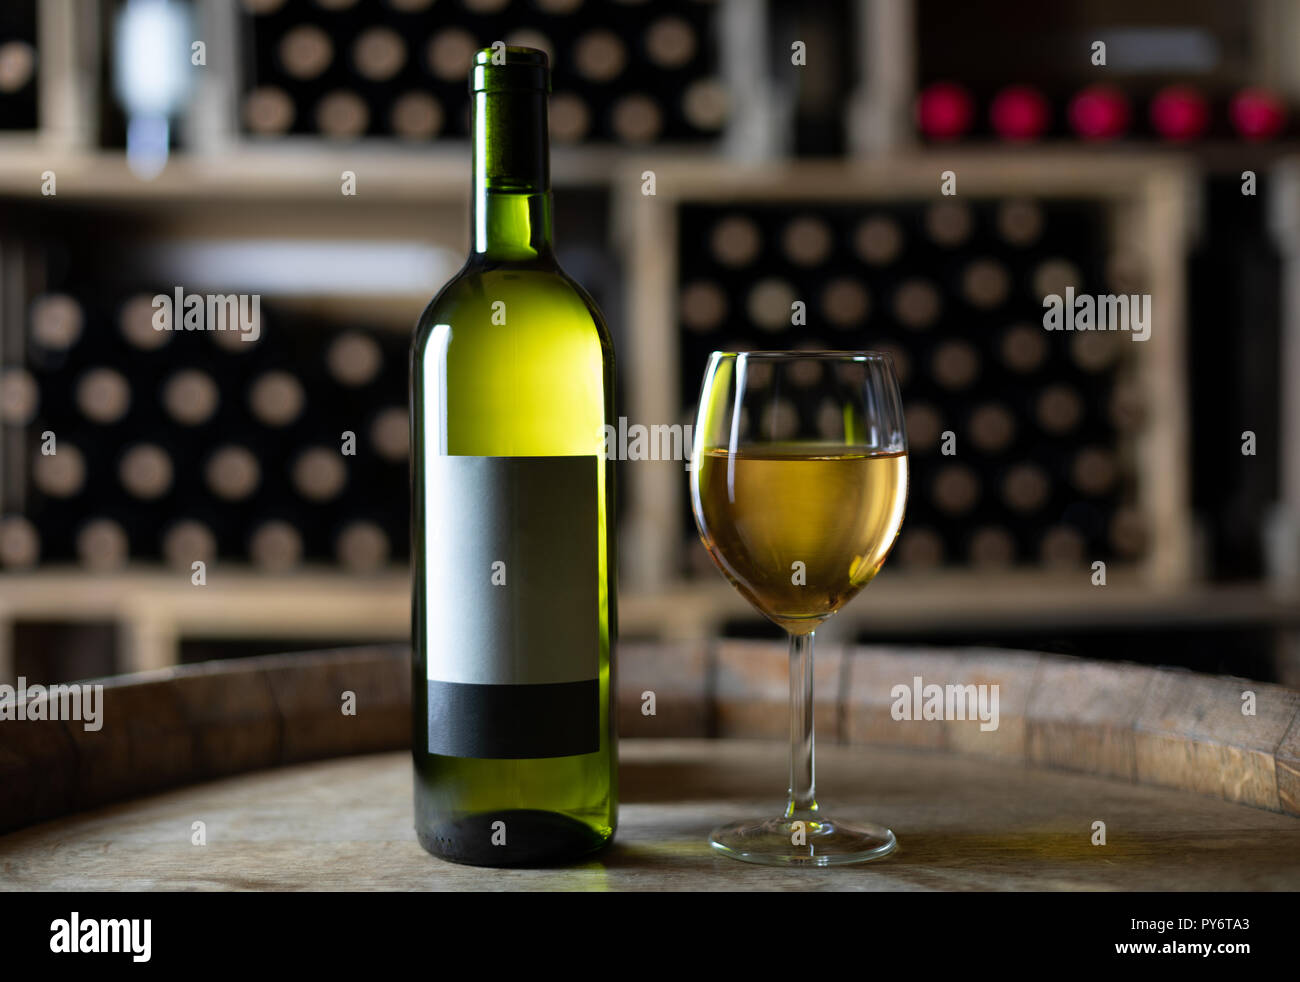 Weiße Flasche Wein mit einem gefüllten Weinglas auf einem Fass in einem  Keller, Schweiz Stockfotografie - Alamy